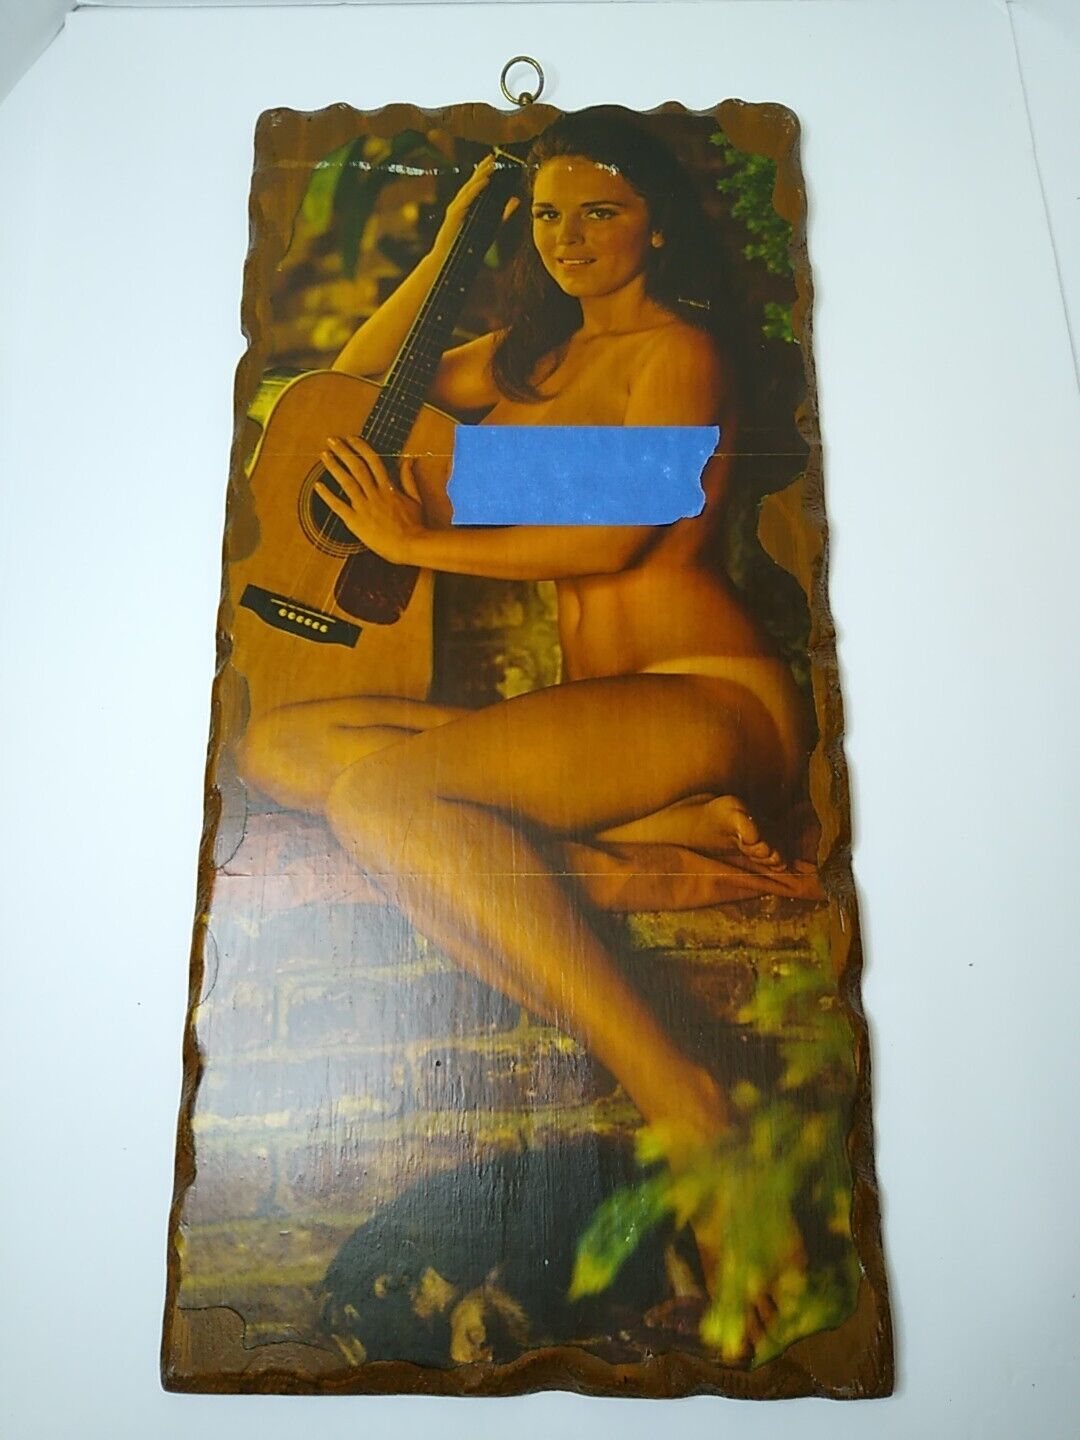 Michelle Hamilton 1968 Rare Pin-up Layered On Wooden Backboard Vietnam Era